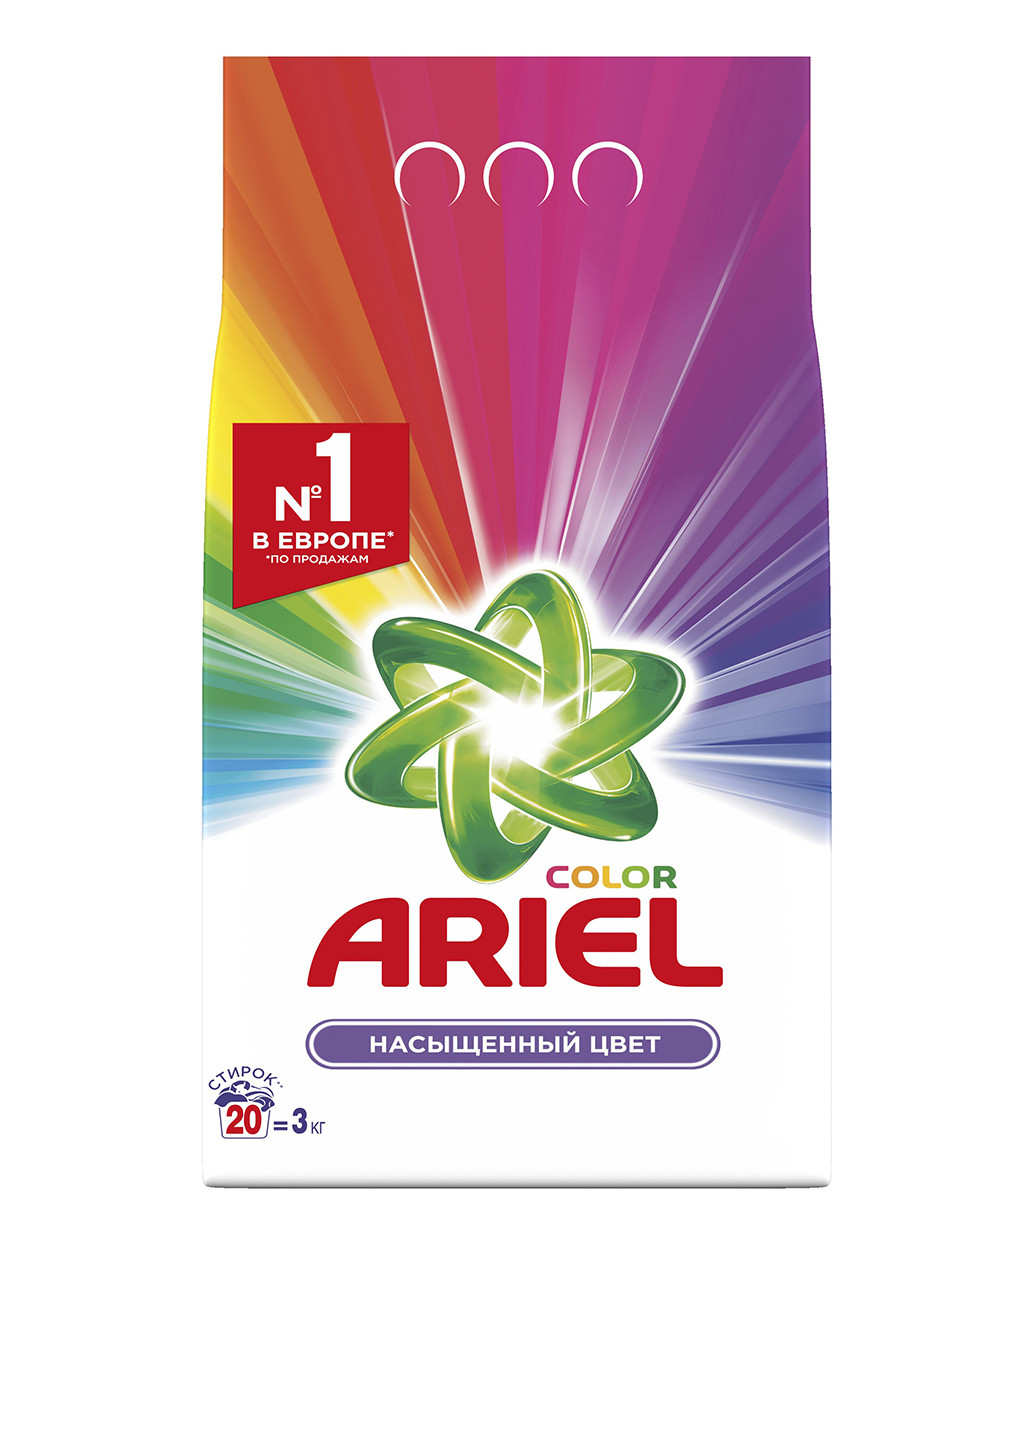 Порошок Color Style, 3 кг Ariel (9515217)